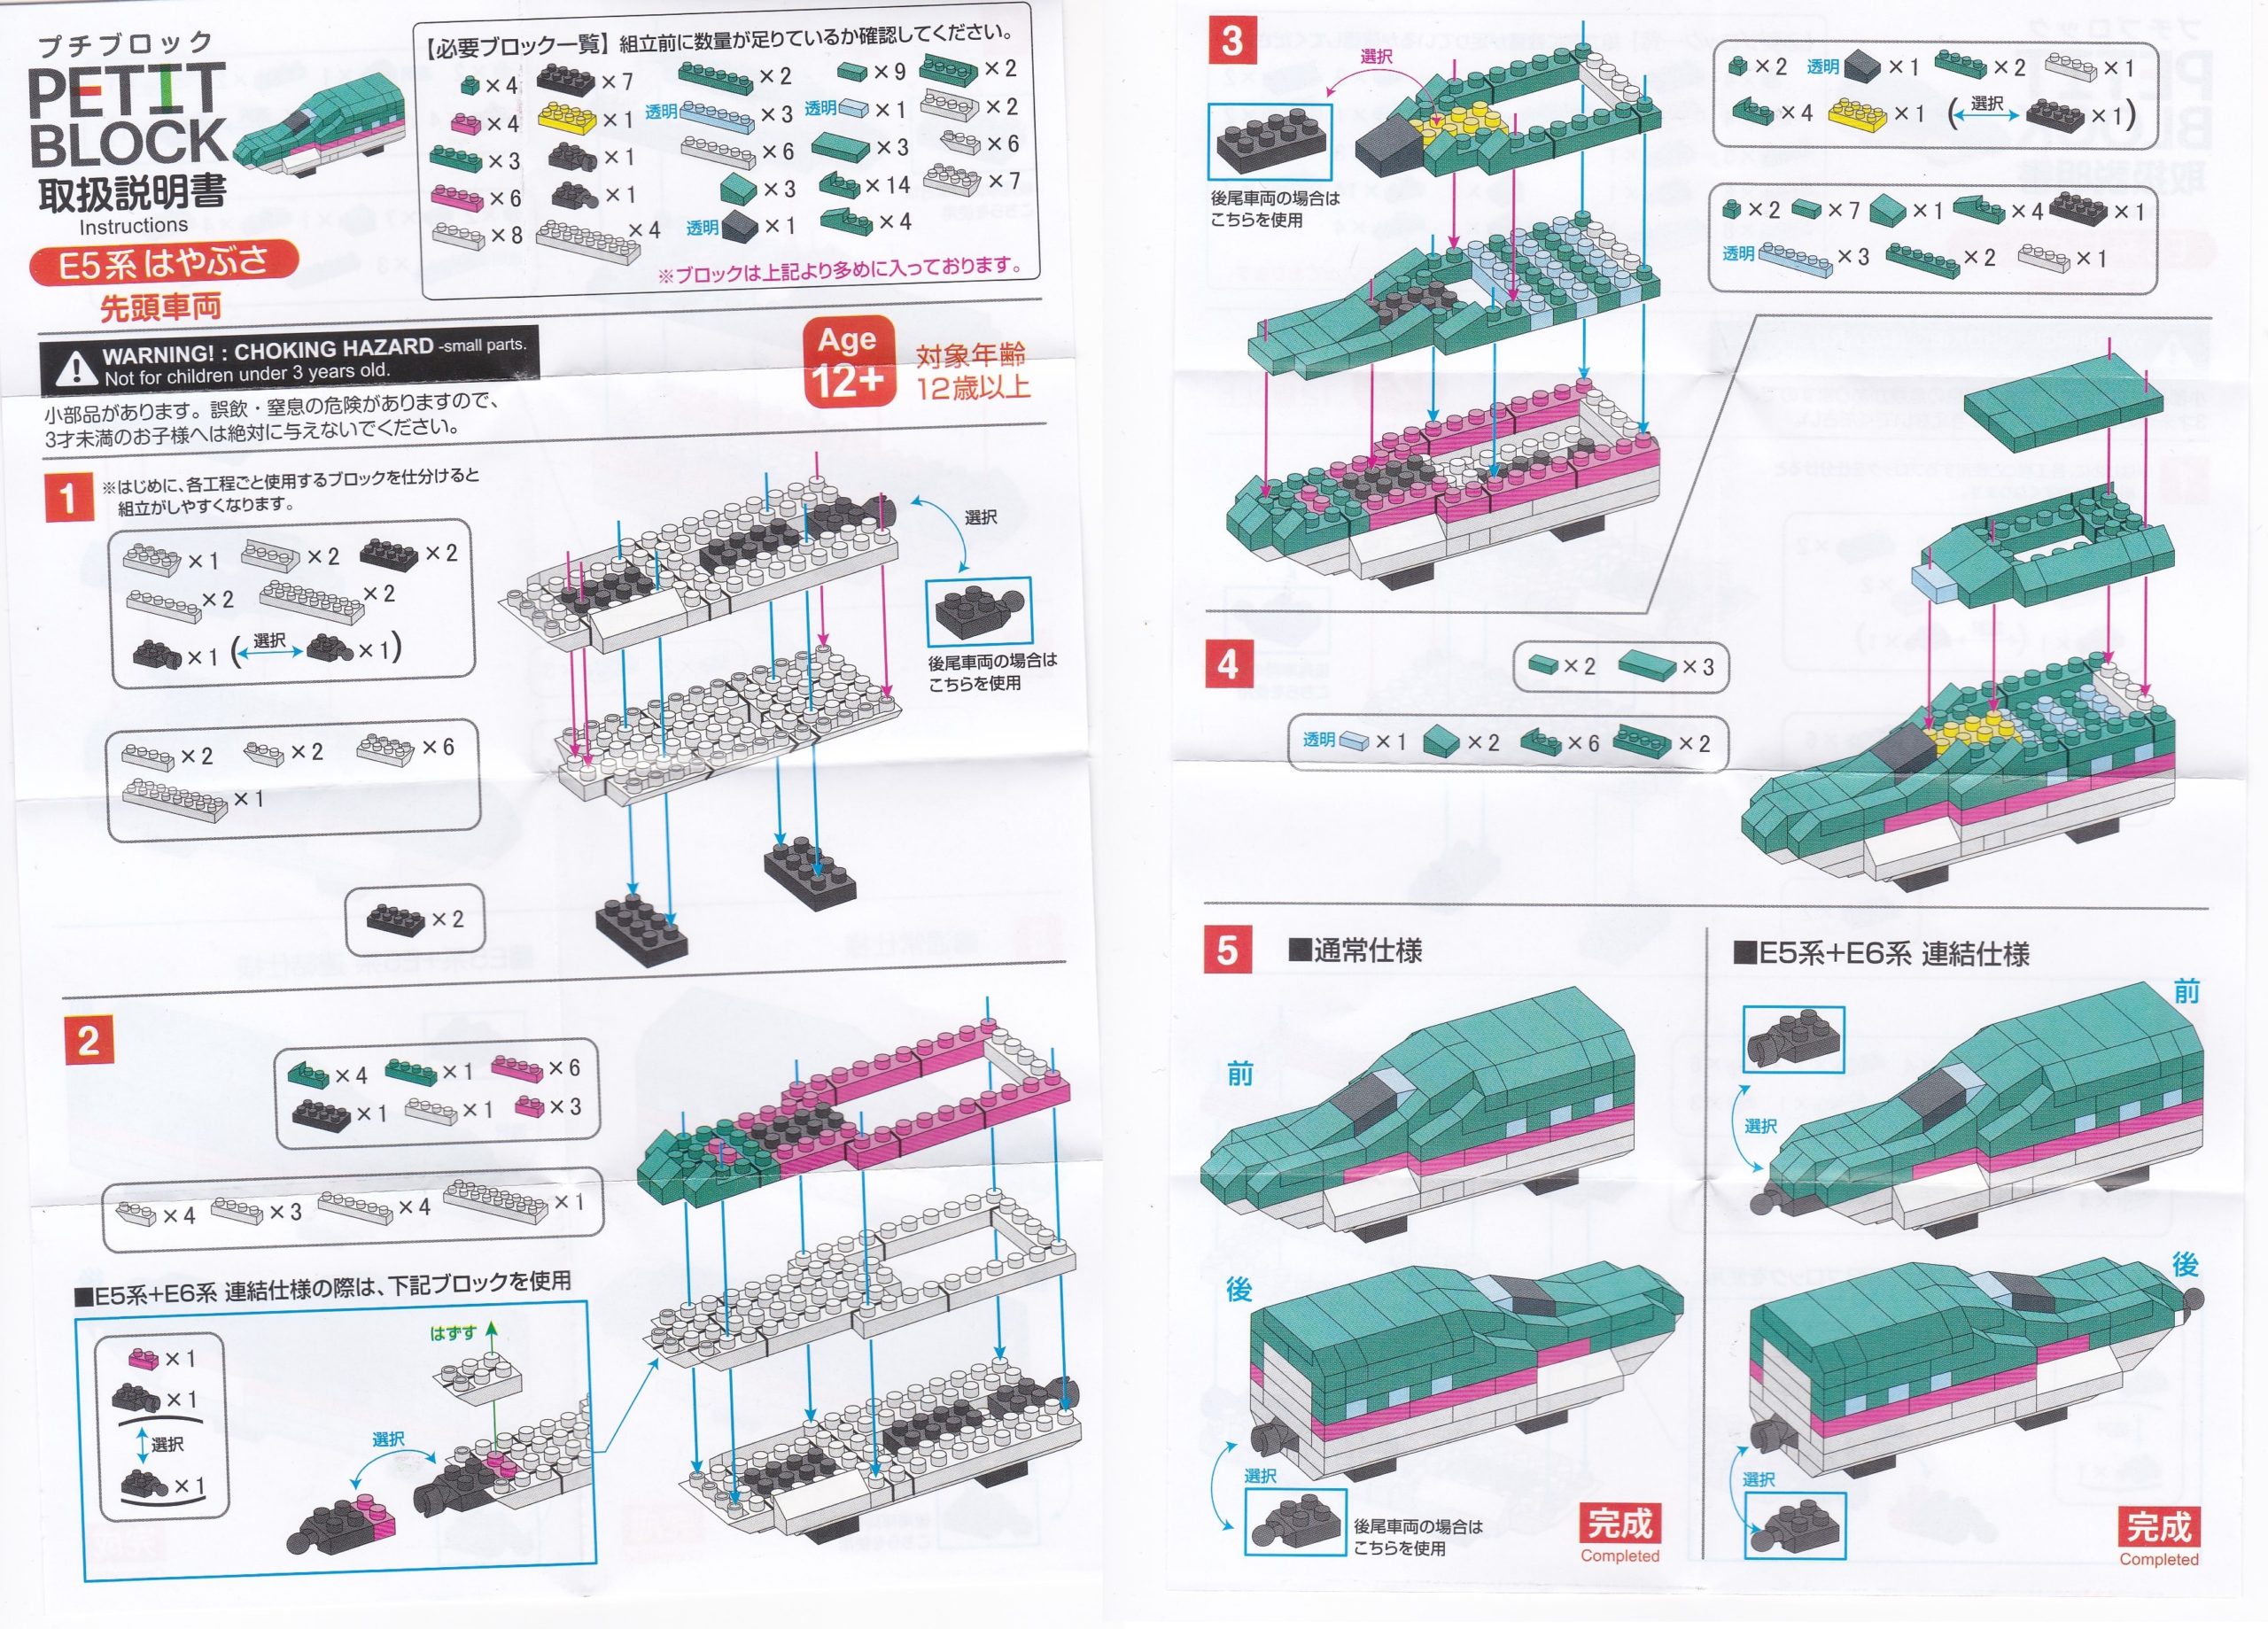 ダイソープチブロック新幹線 E5系はやぶさ 作り方 説明書あり 多趣味のんびり日記帳